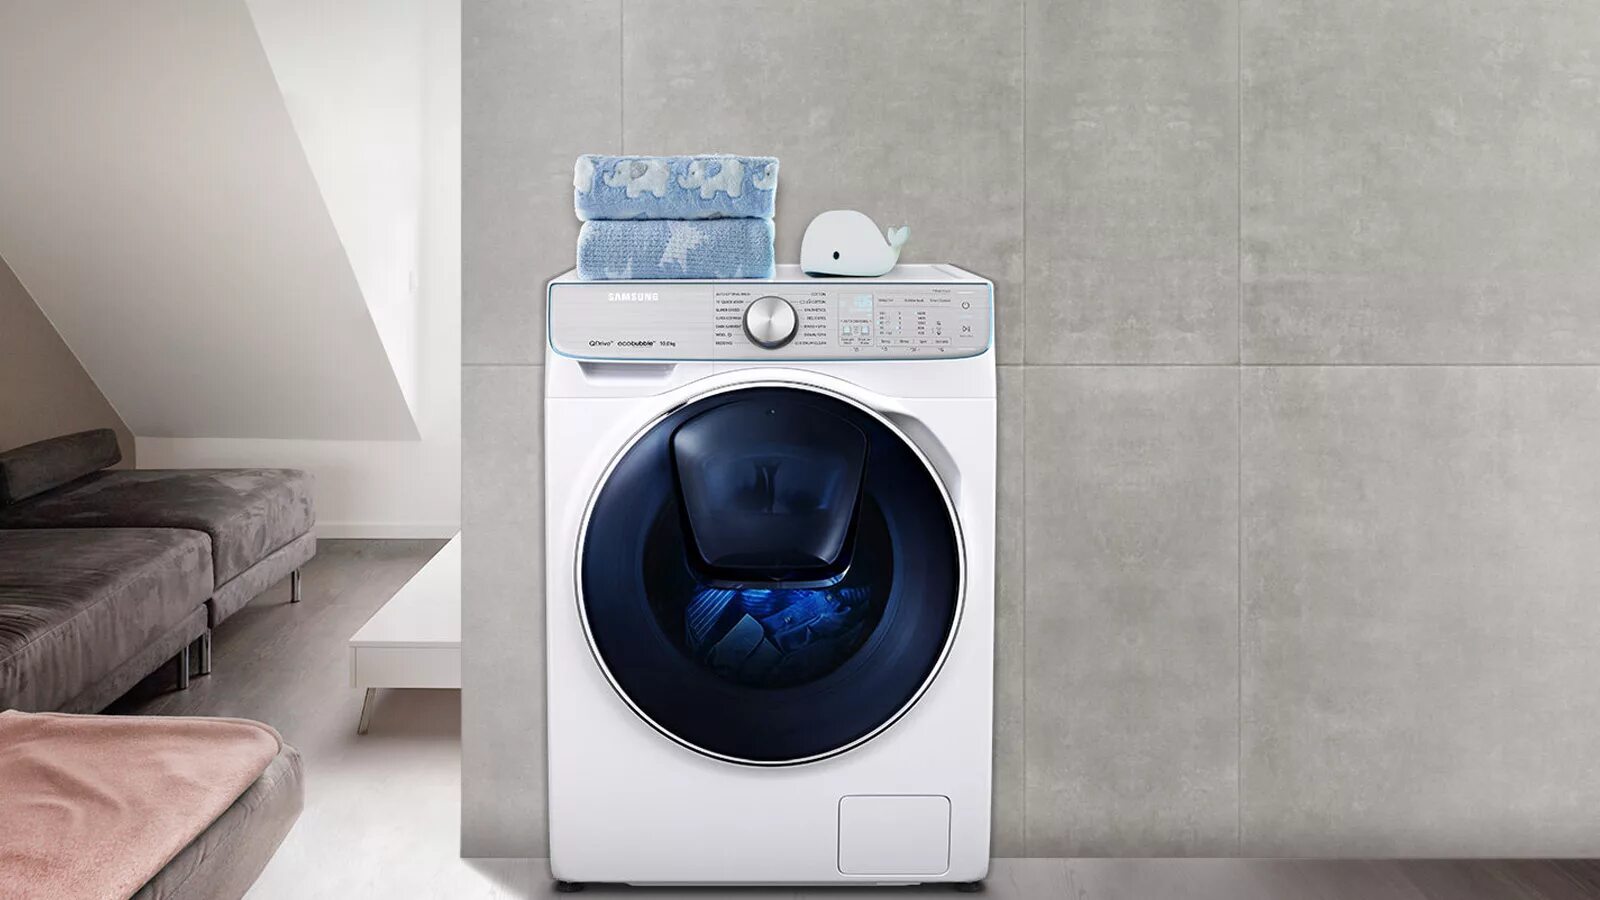 Samsung QUICKDRIVE. Стиральная машина Samsung quick Drive. Washing Machine Samsung 2020. Samsung Washer Dryer 2020..